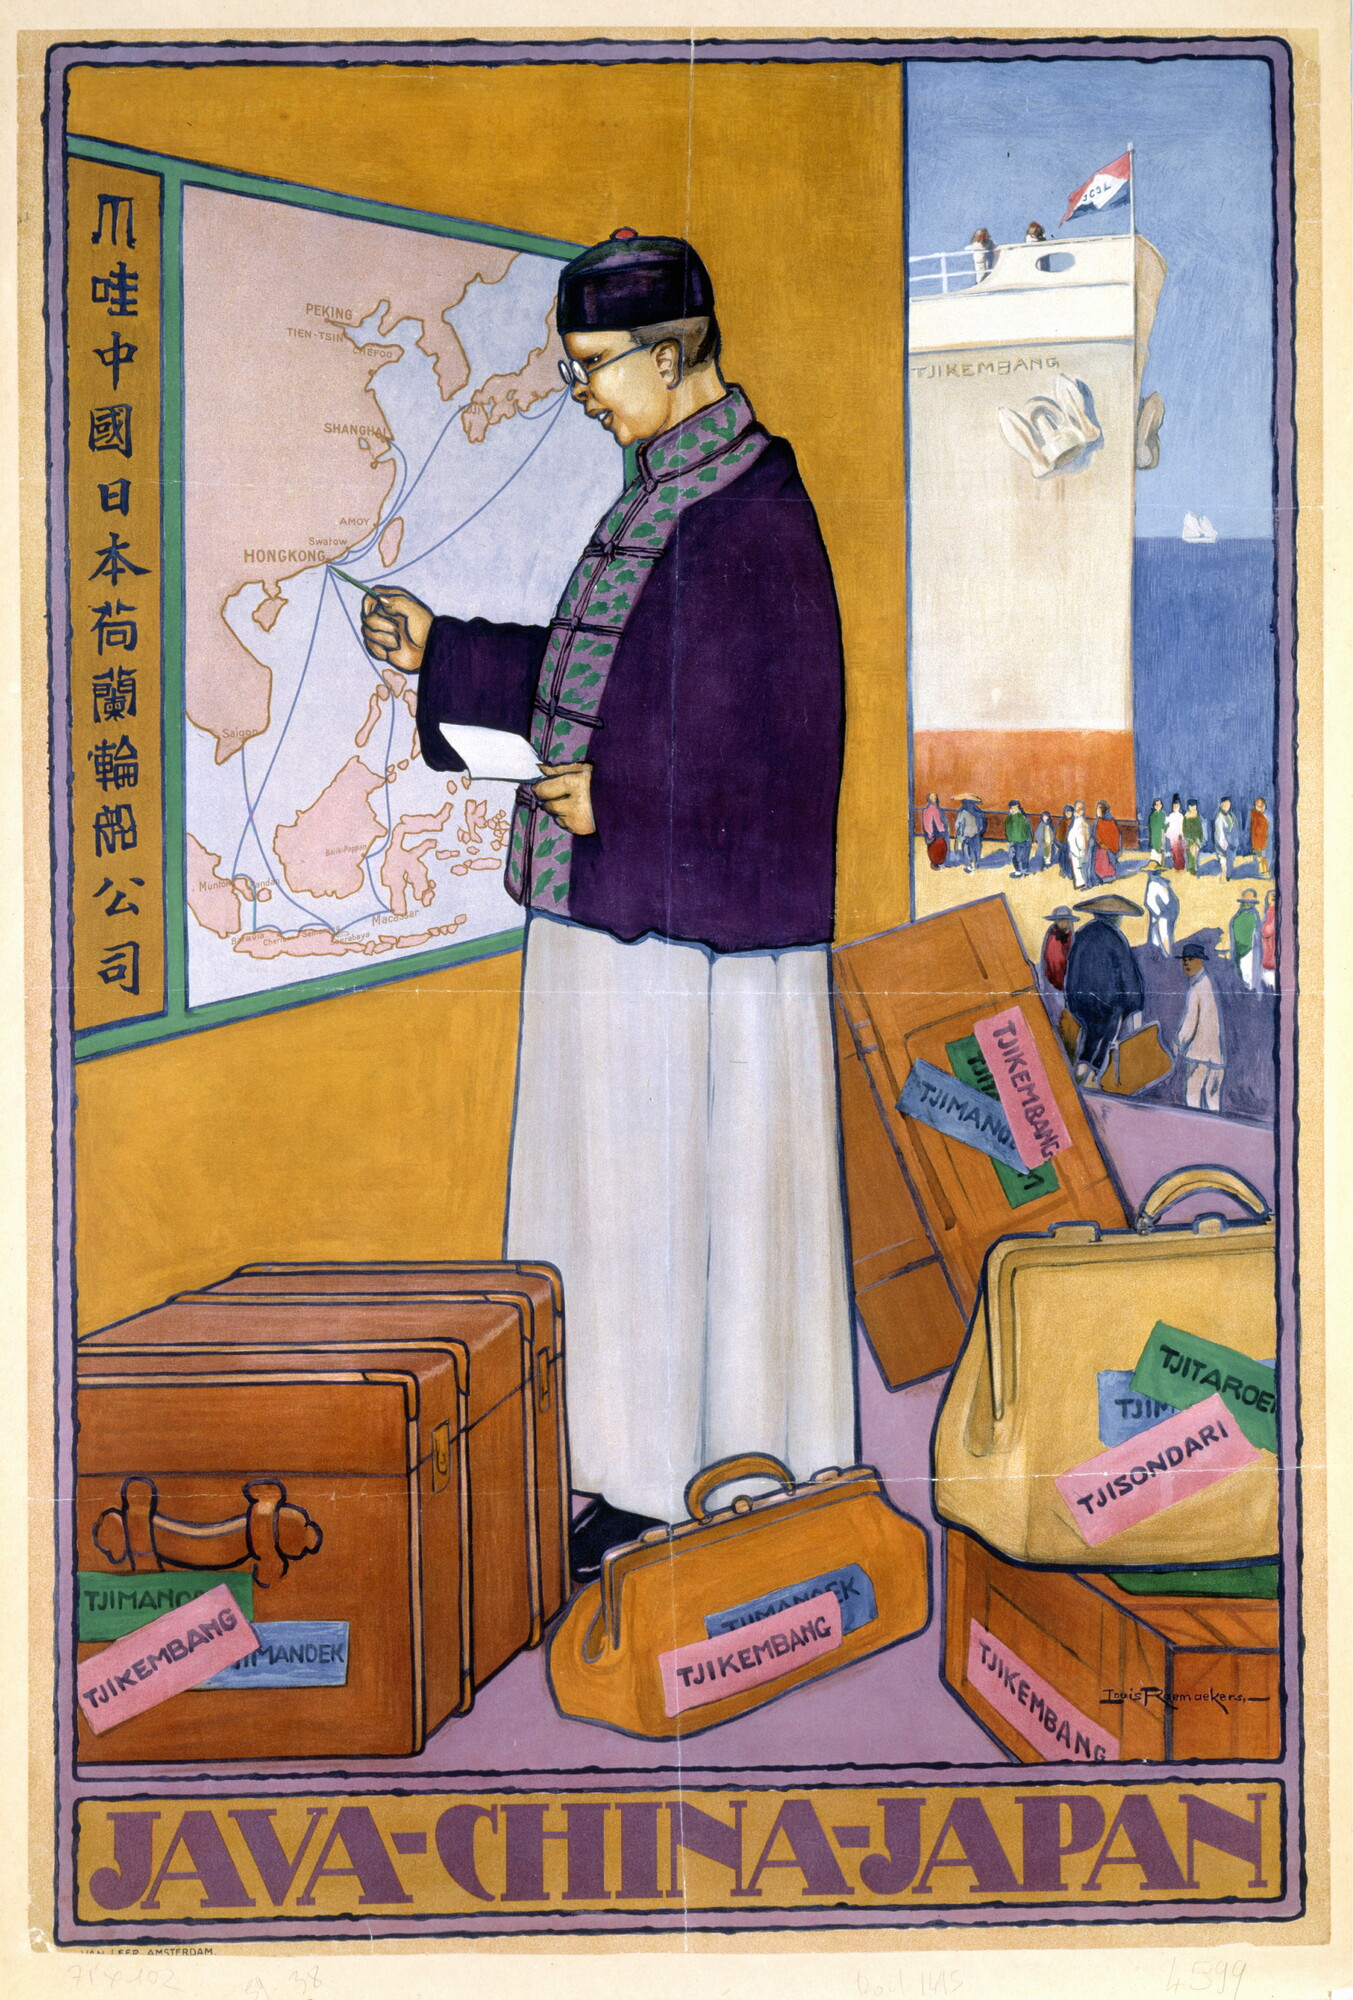 A.5399(01); Affiche van de Java China Japan Lijn; affiche